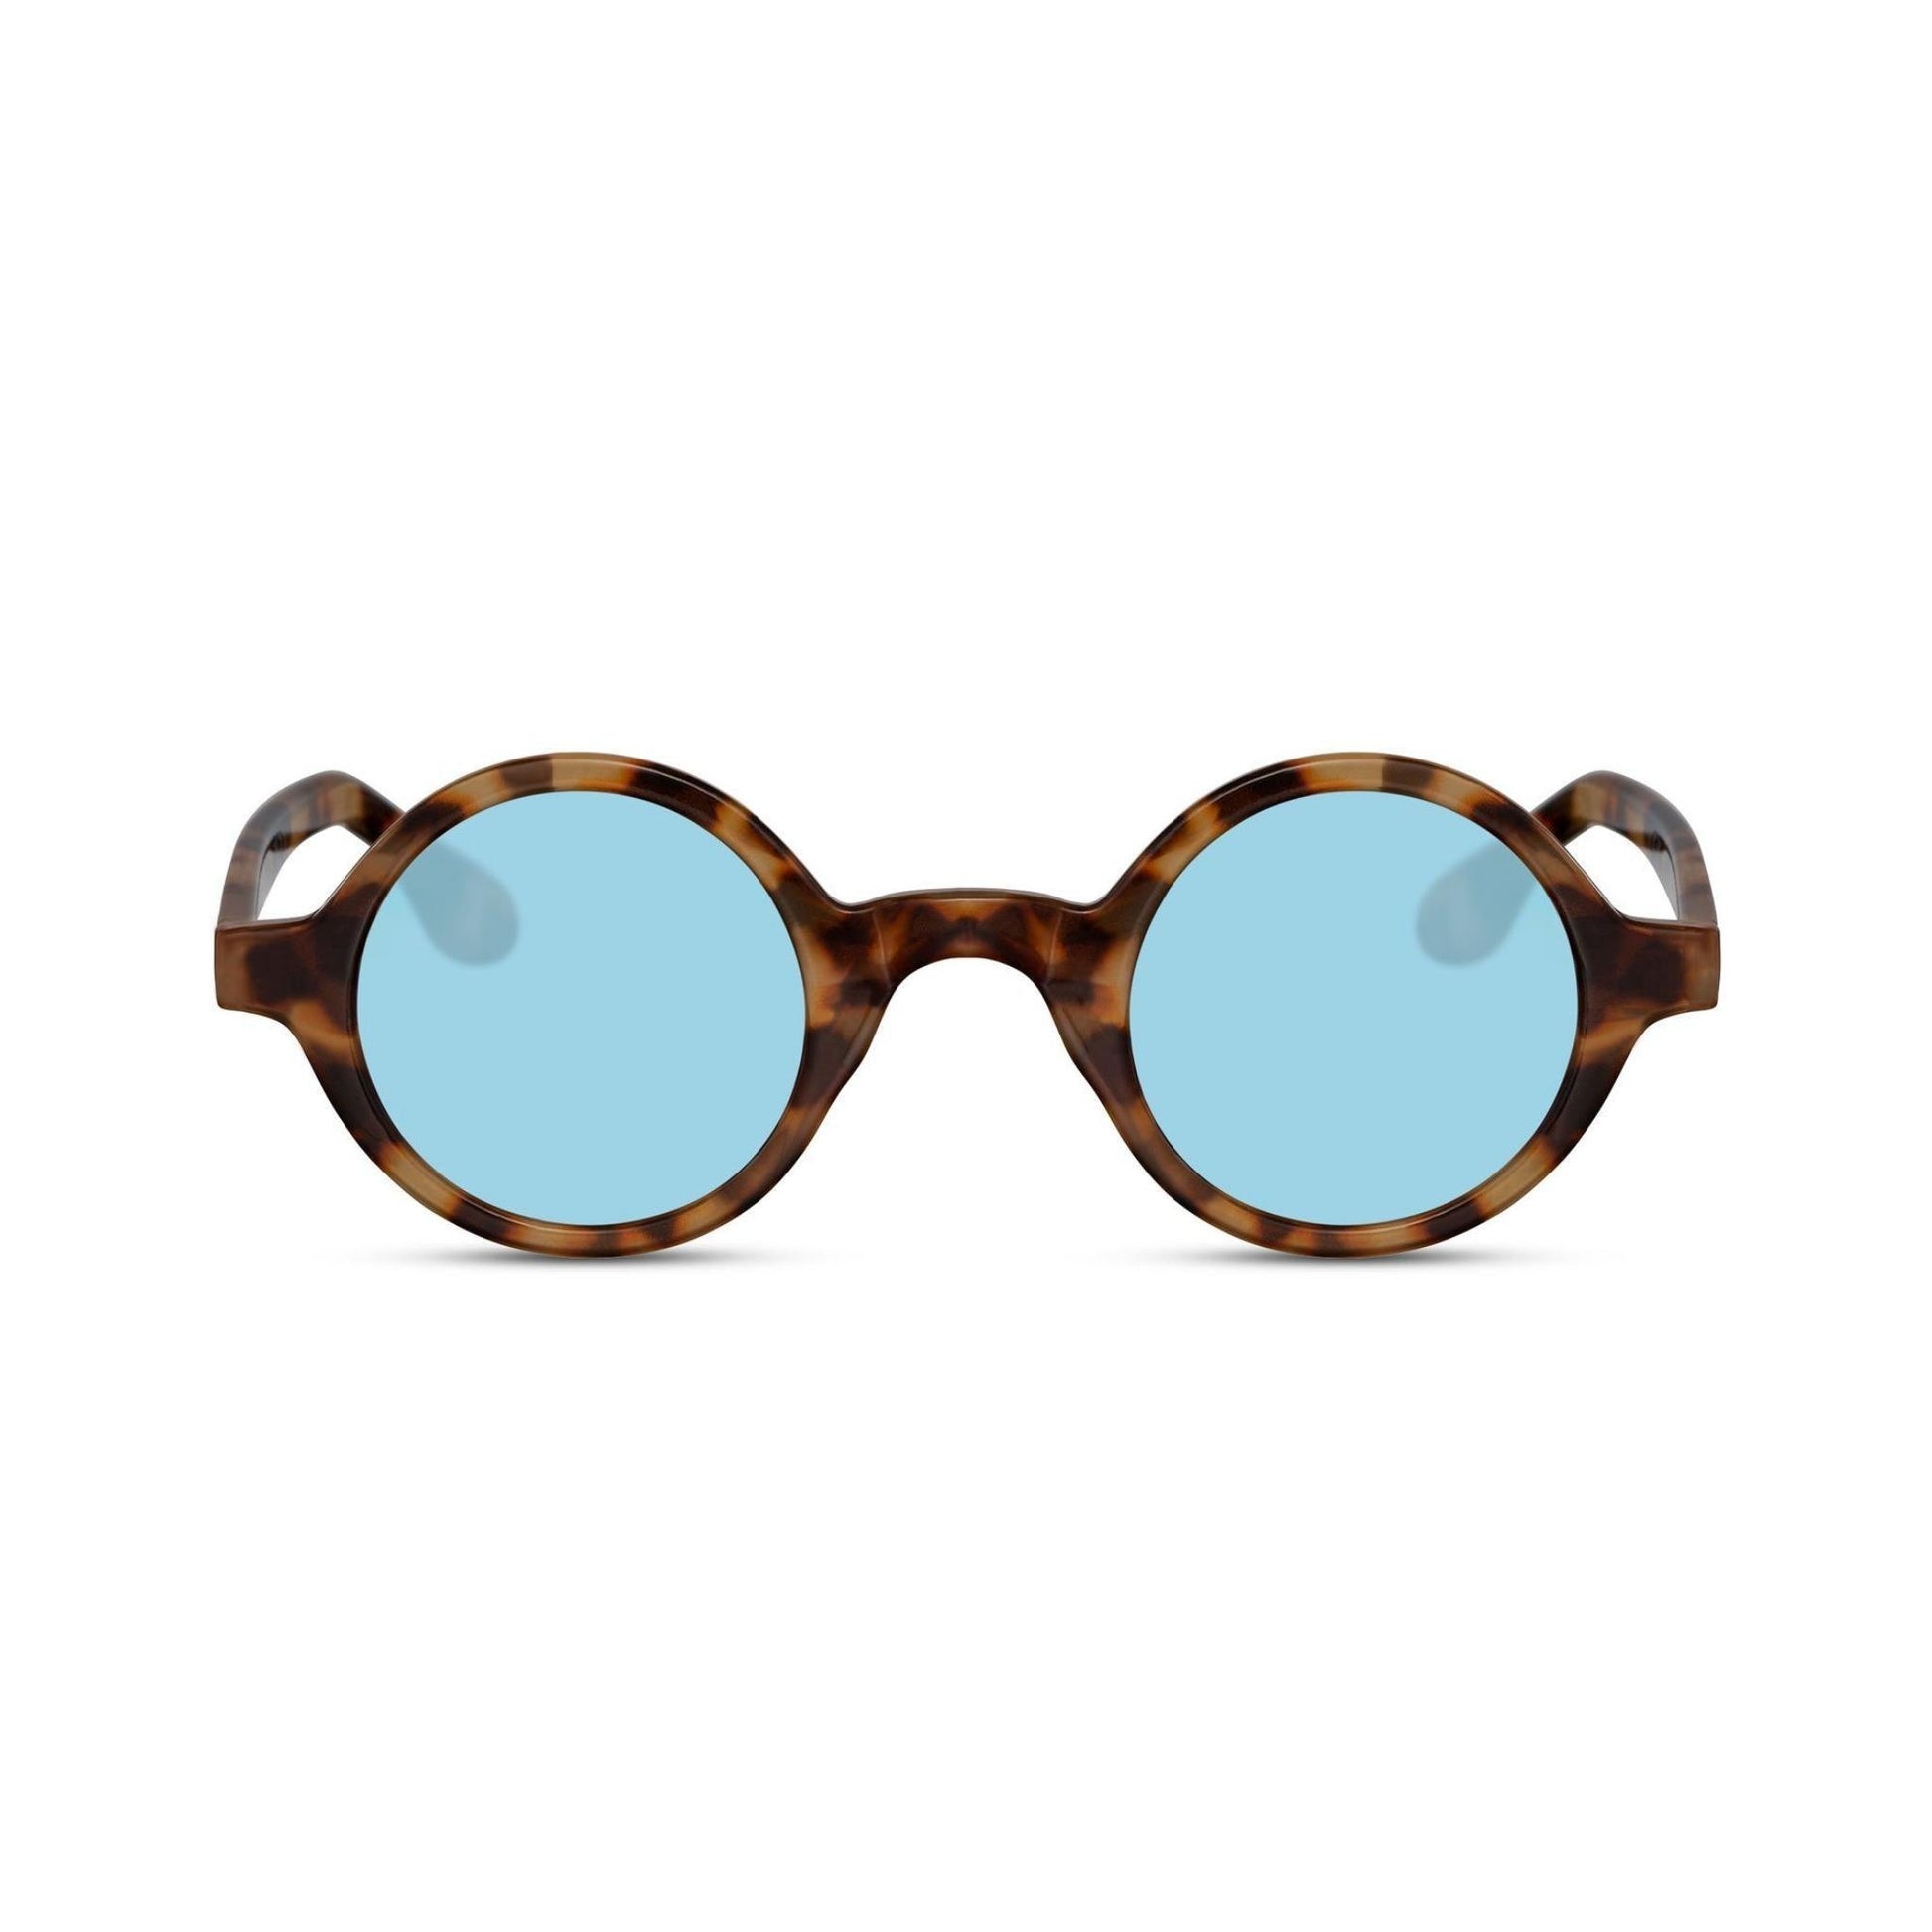 Στρογγυλά Γυαλιά Ηλίου Aurora της Exposure Sunglasses με προστασία UV400 σε καφέ χρώμα σκελετού και μπλε φακό.